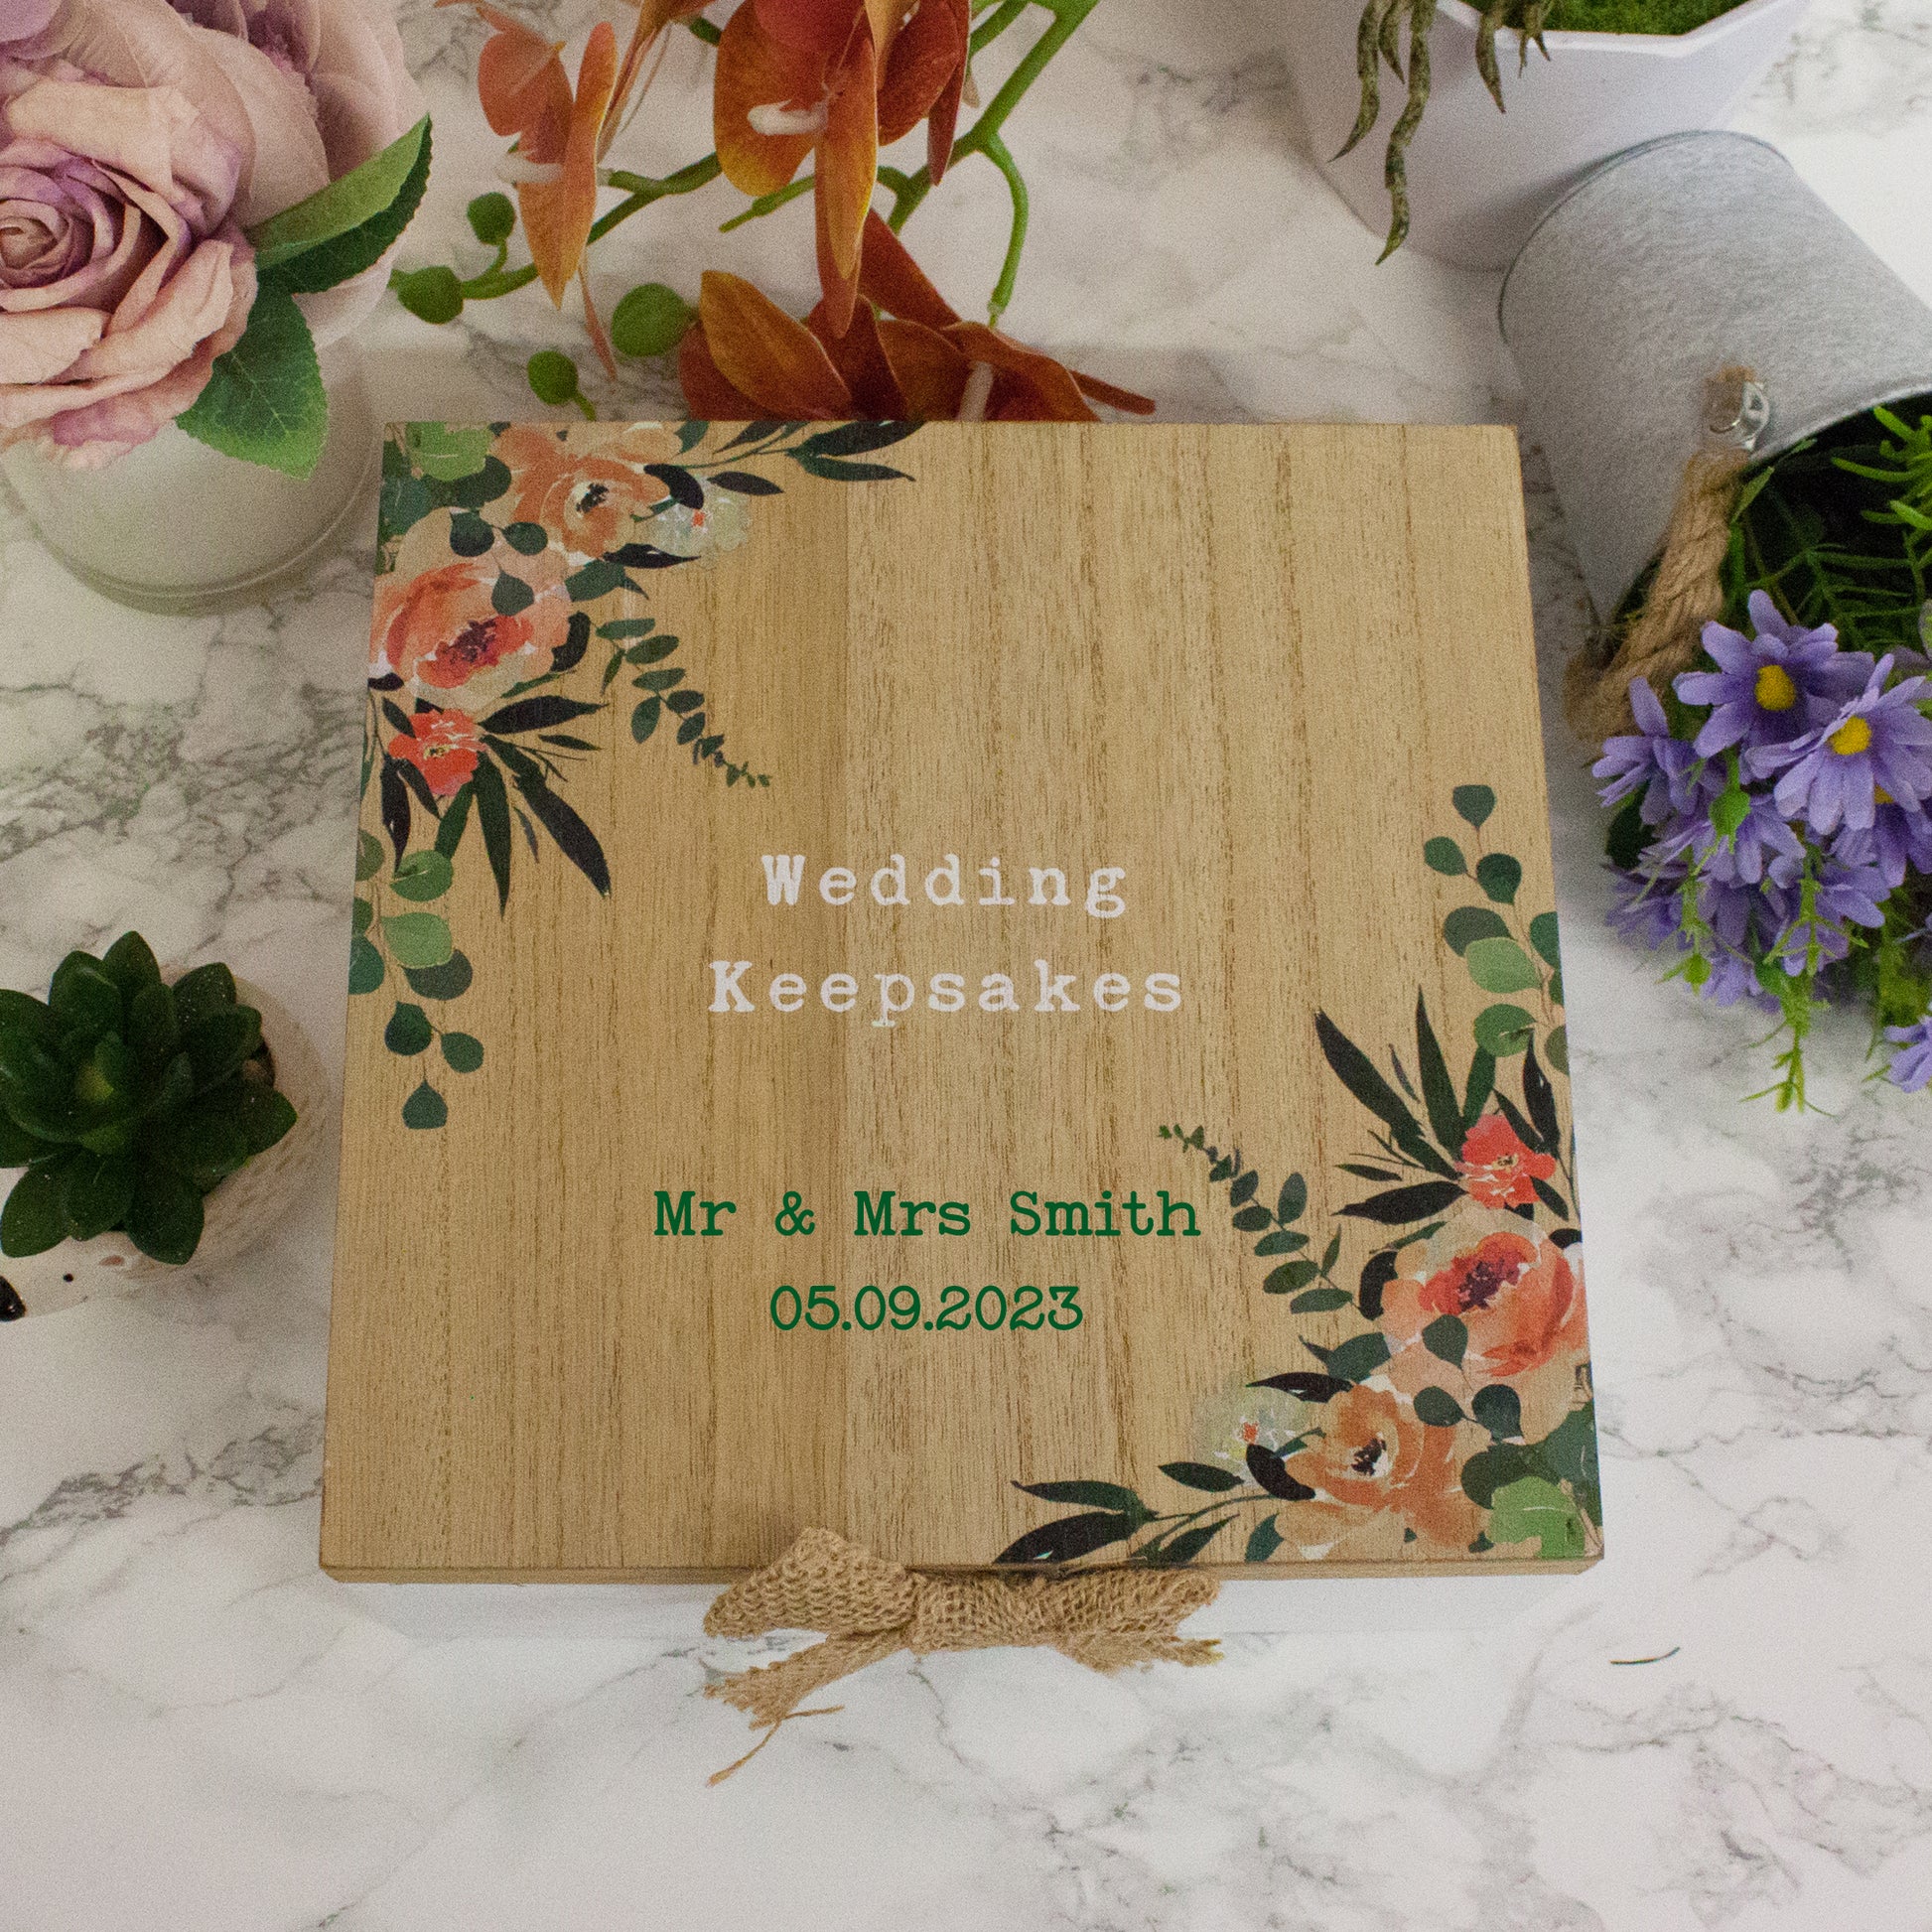 Personalised Wooden Wedding Keepsake Memory Box  - Always Looking Good -   